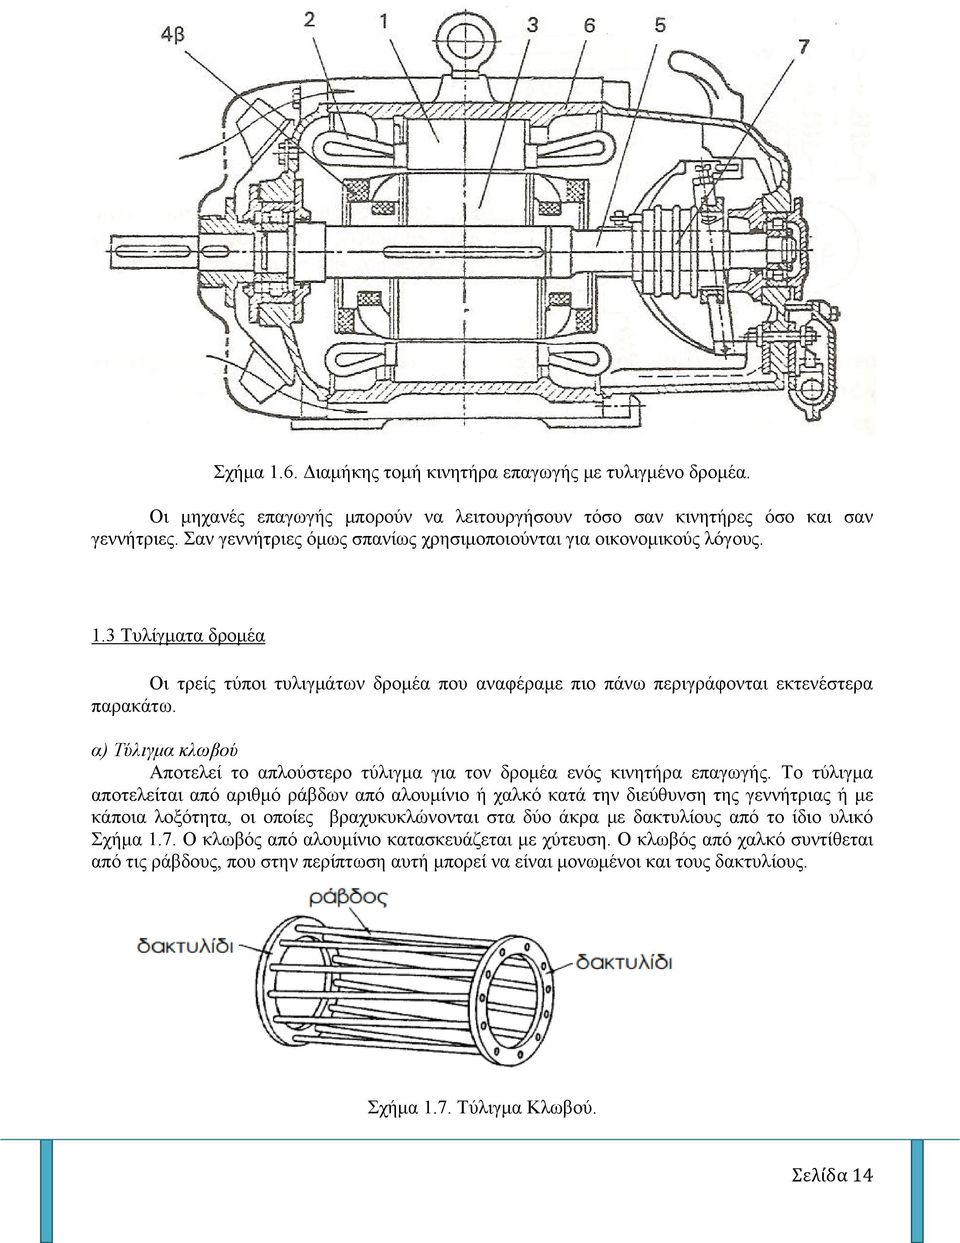 α) Τύλιγμα κλωβού Αποτελεί το απλούστερο τύλιγμα για τον δρομέα ενός κινητήρα επαγωγής.